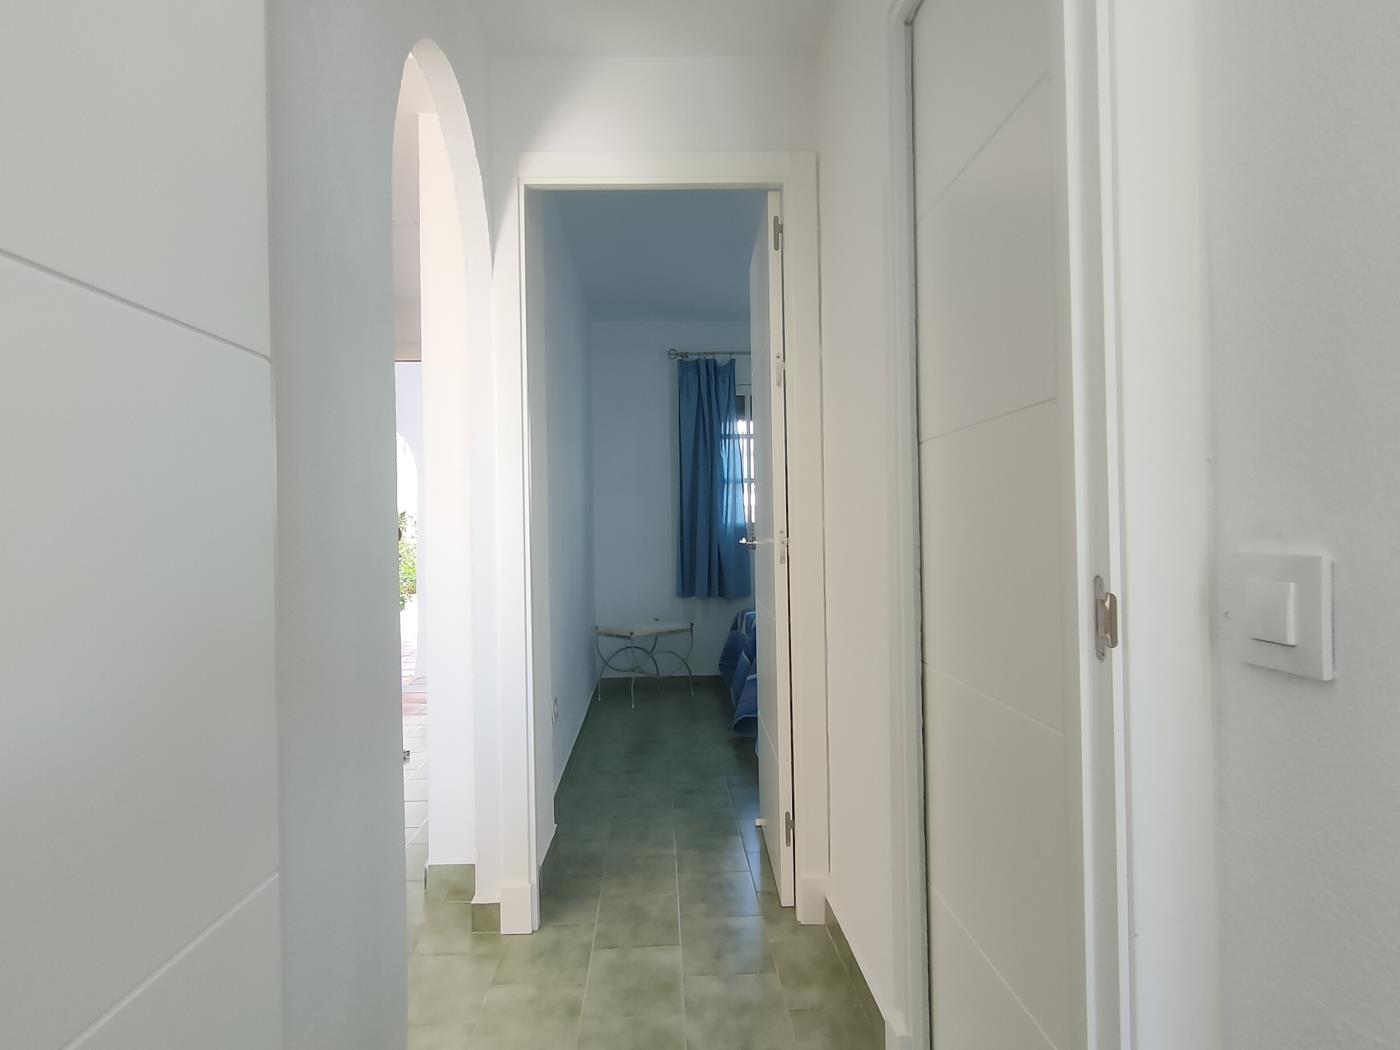 Ref ARIES3. Apartamento de dos dormitorios en planta baja en Chiclana de la frontera (Cádiz)